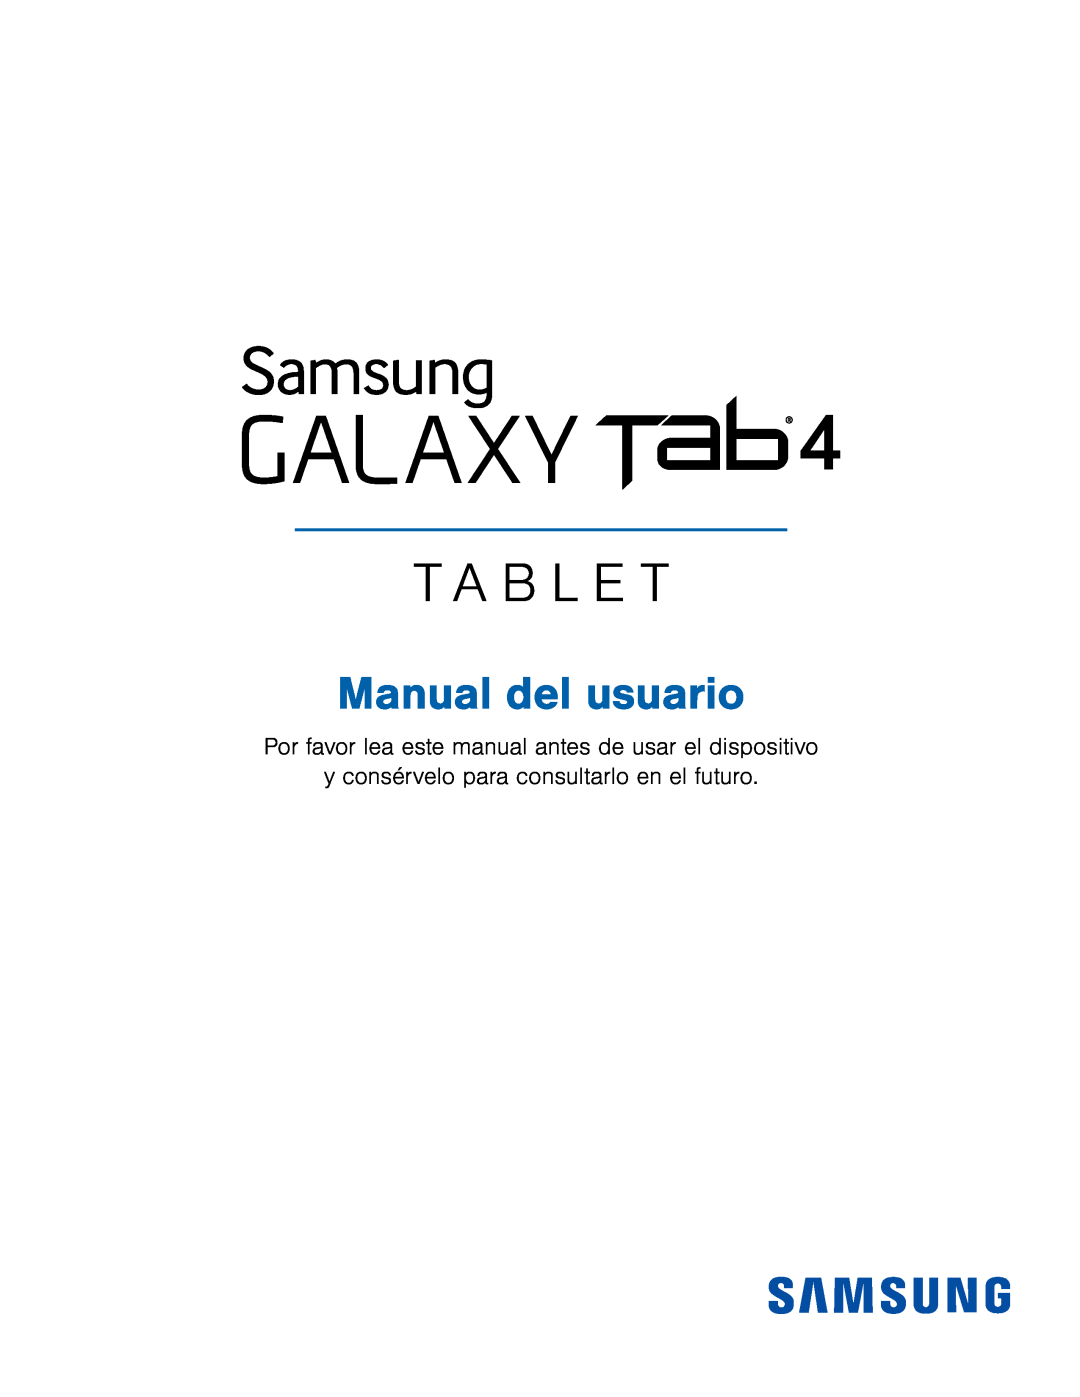 Galaxy Tab 4 8.0 T-Mobile